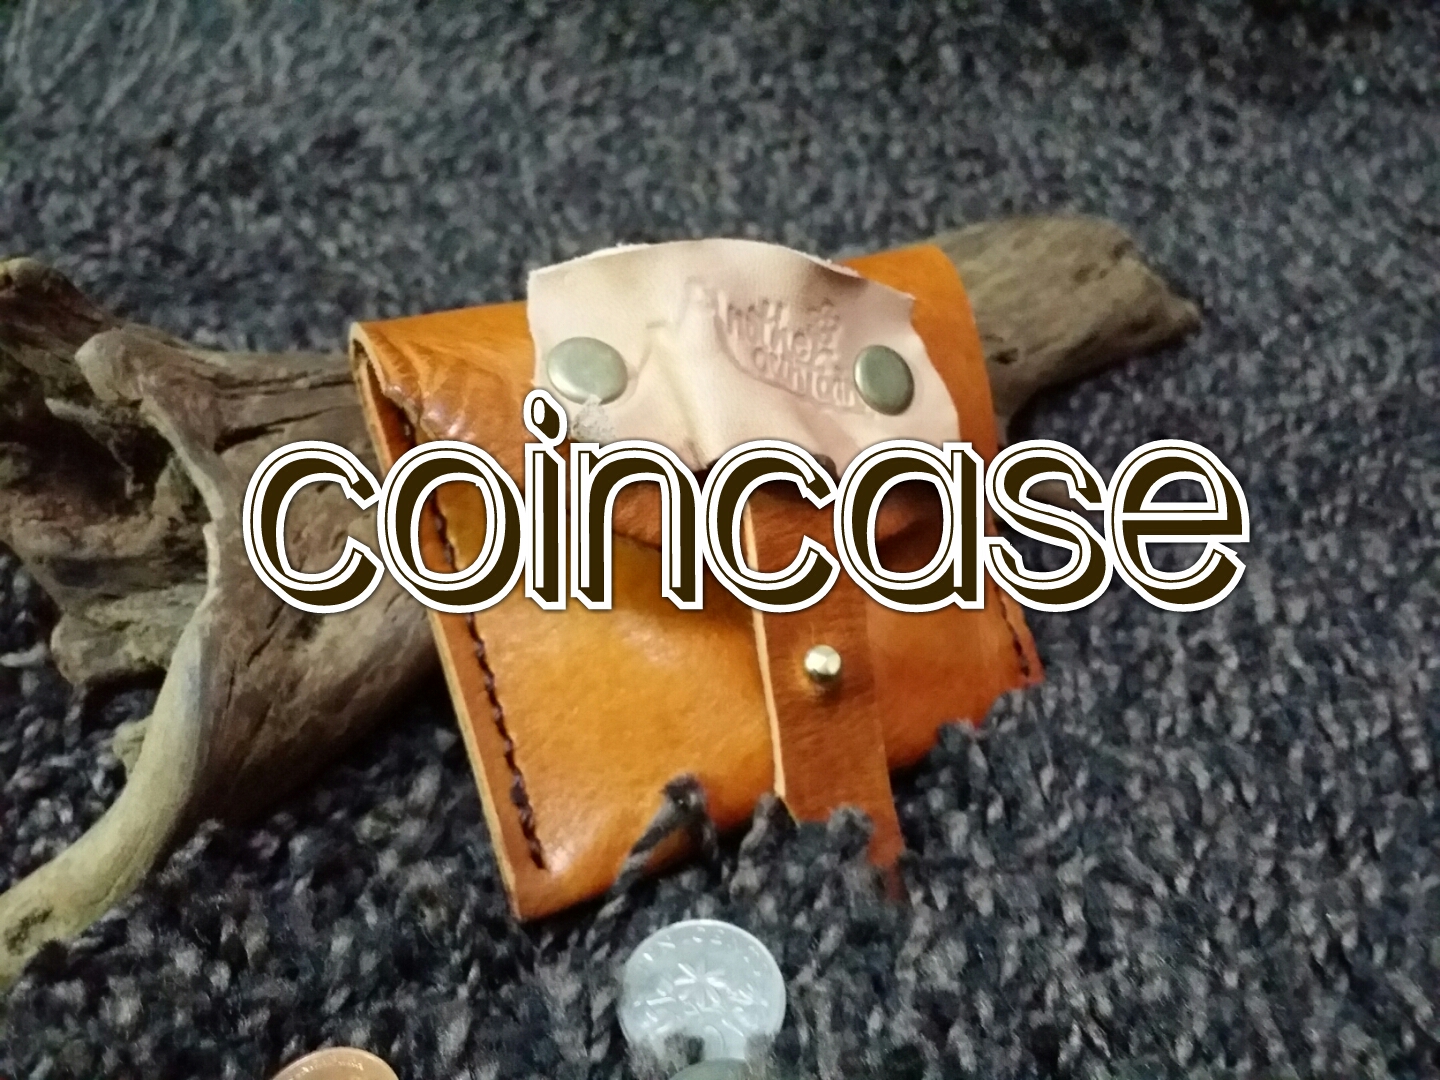 coincase